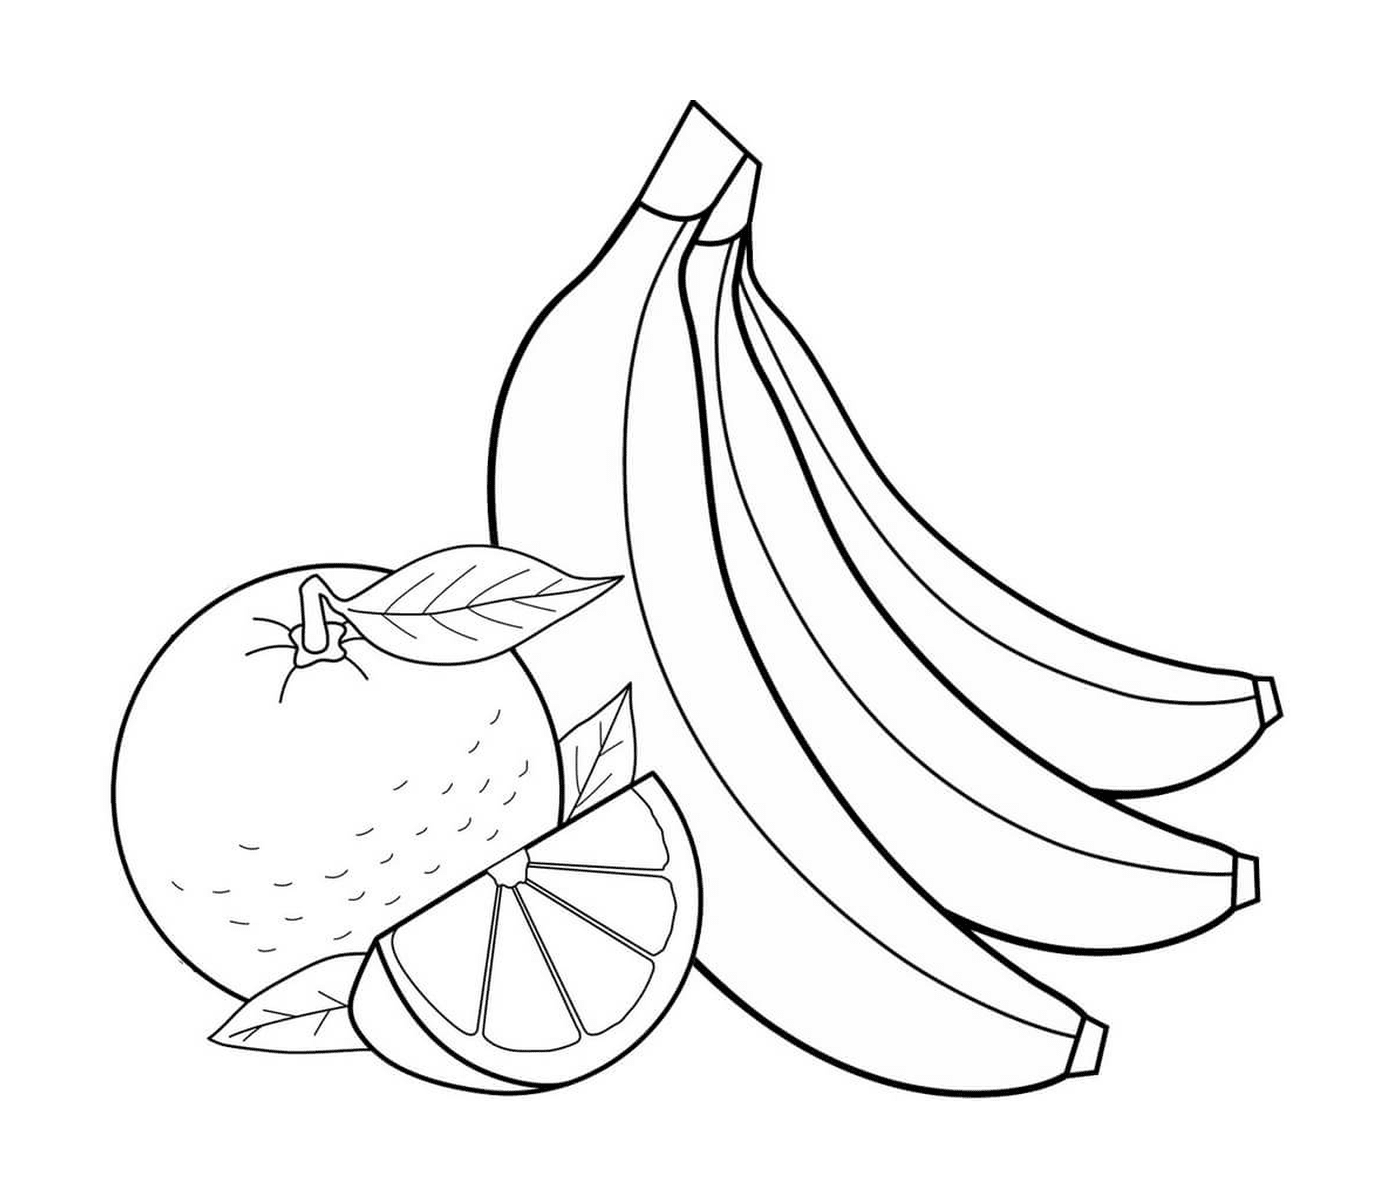  Apple, orange and banana 